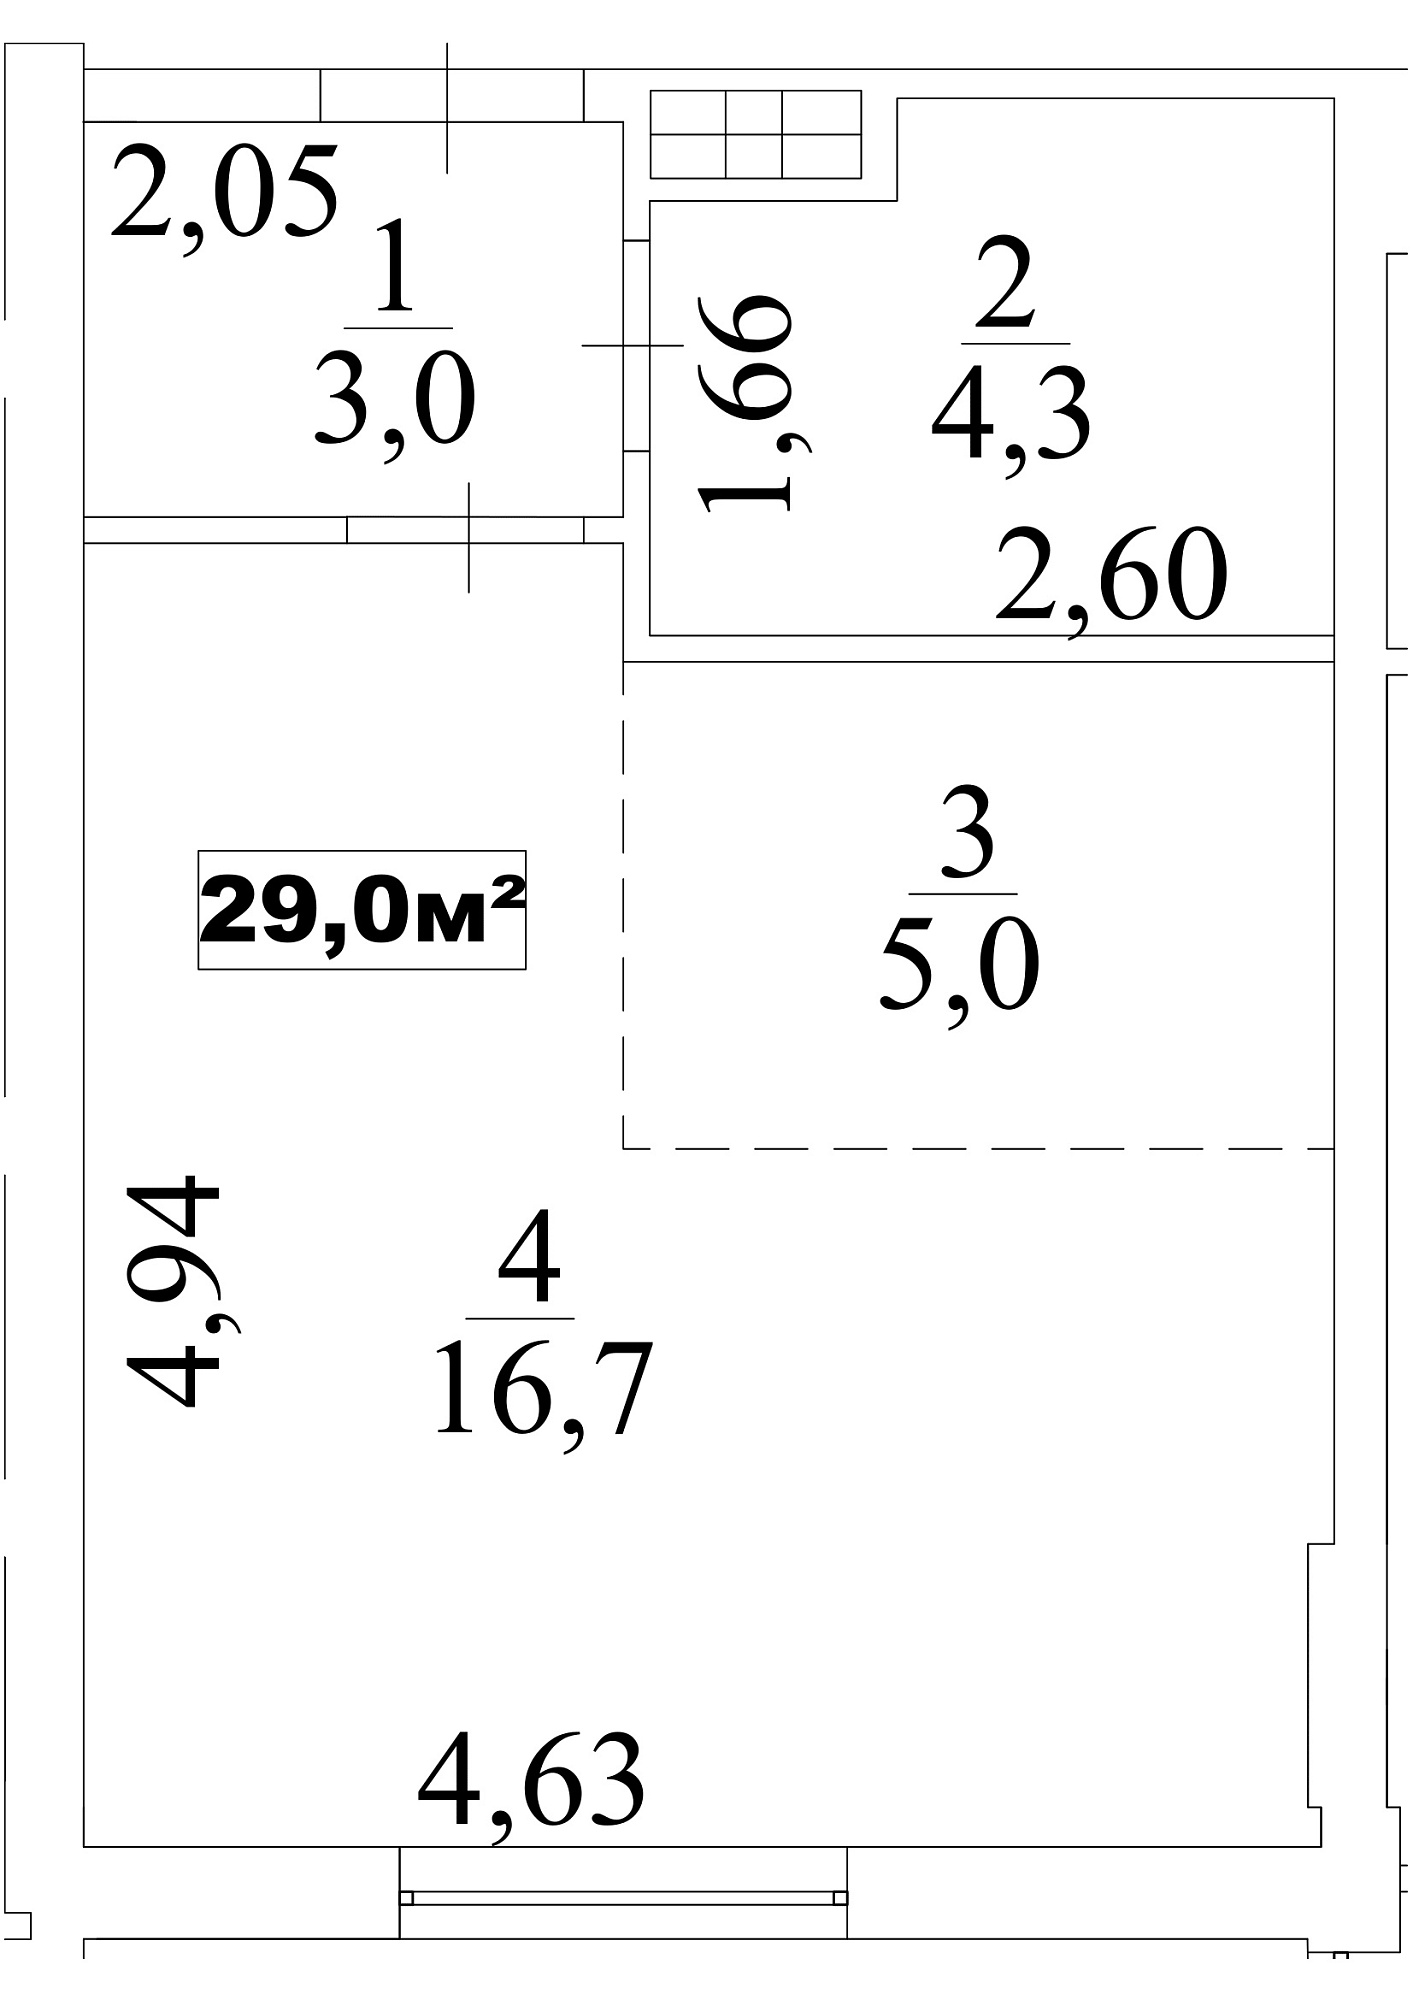 Планування Smart-квартира площею 29м2, AB-10-01/00009.